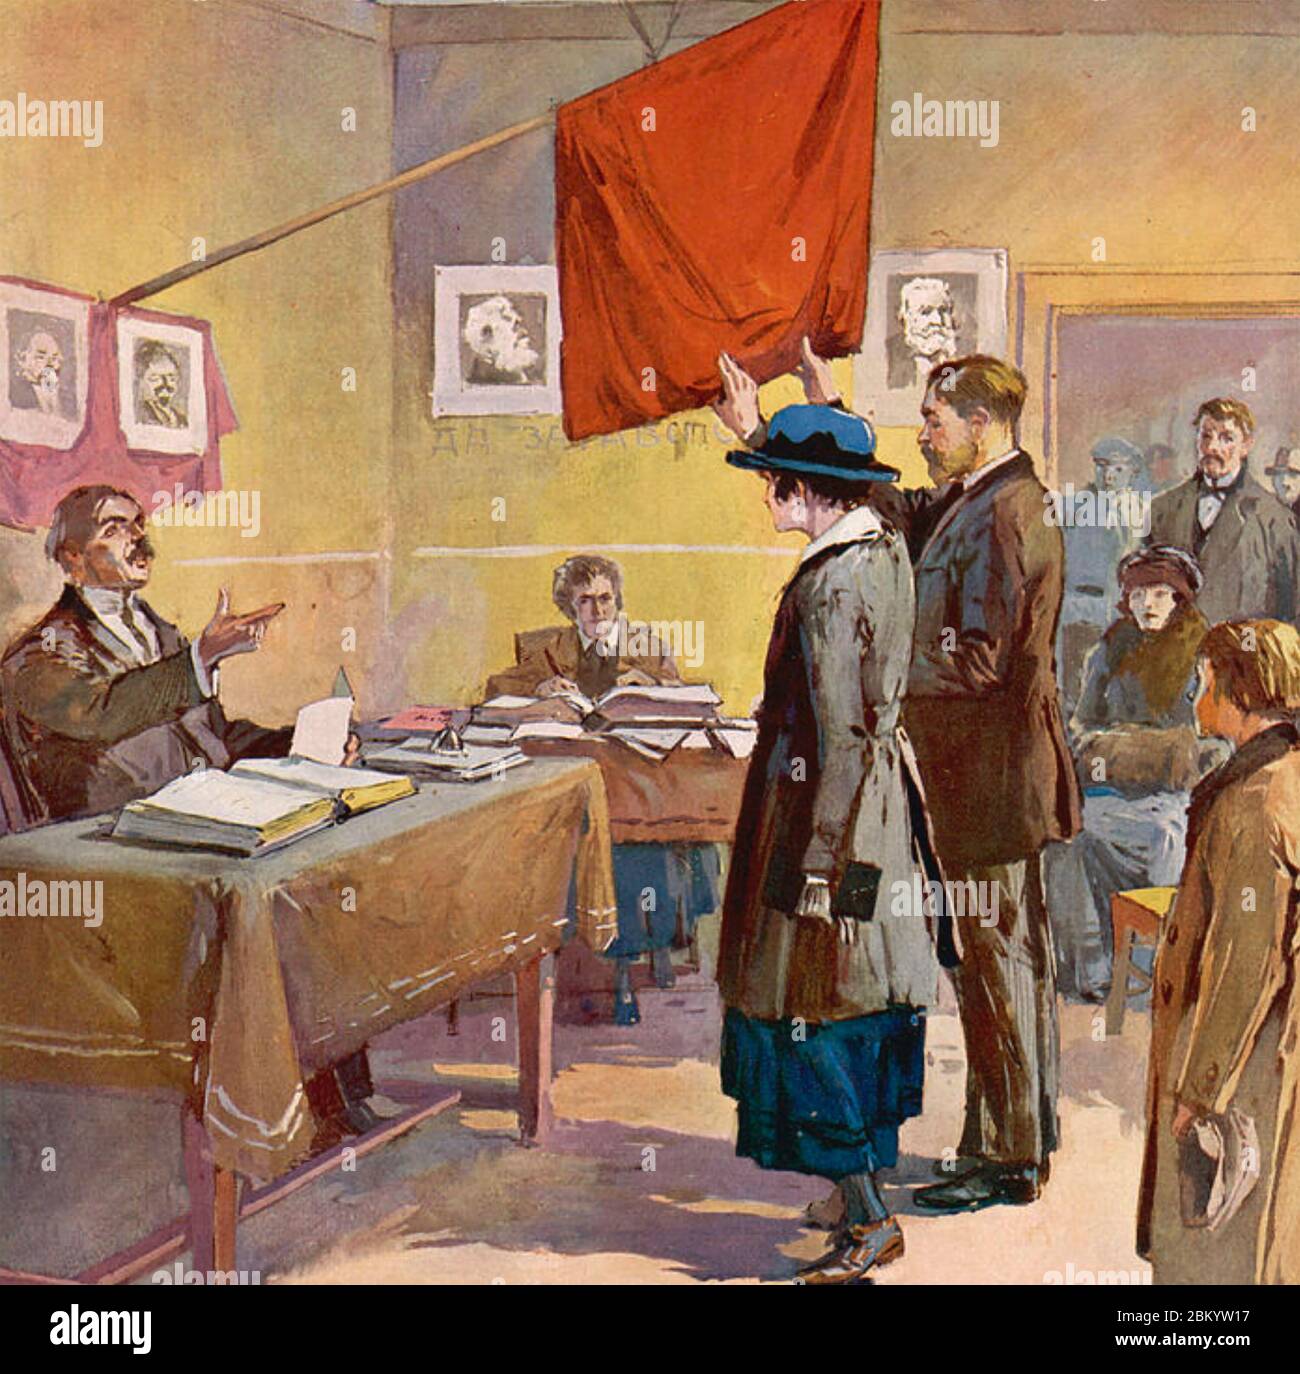 HOCHZEITSZEREMONIE IN RUSSLAND IN DEN 1920ER JAHREN Stockfoto